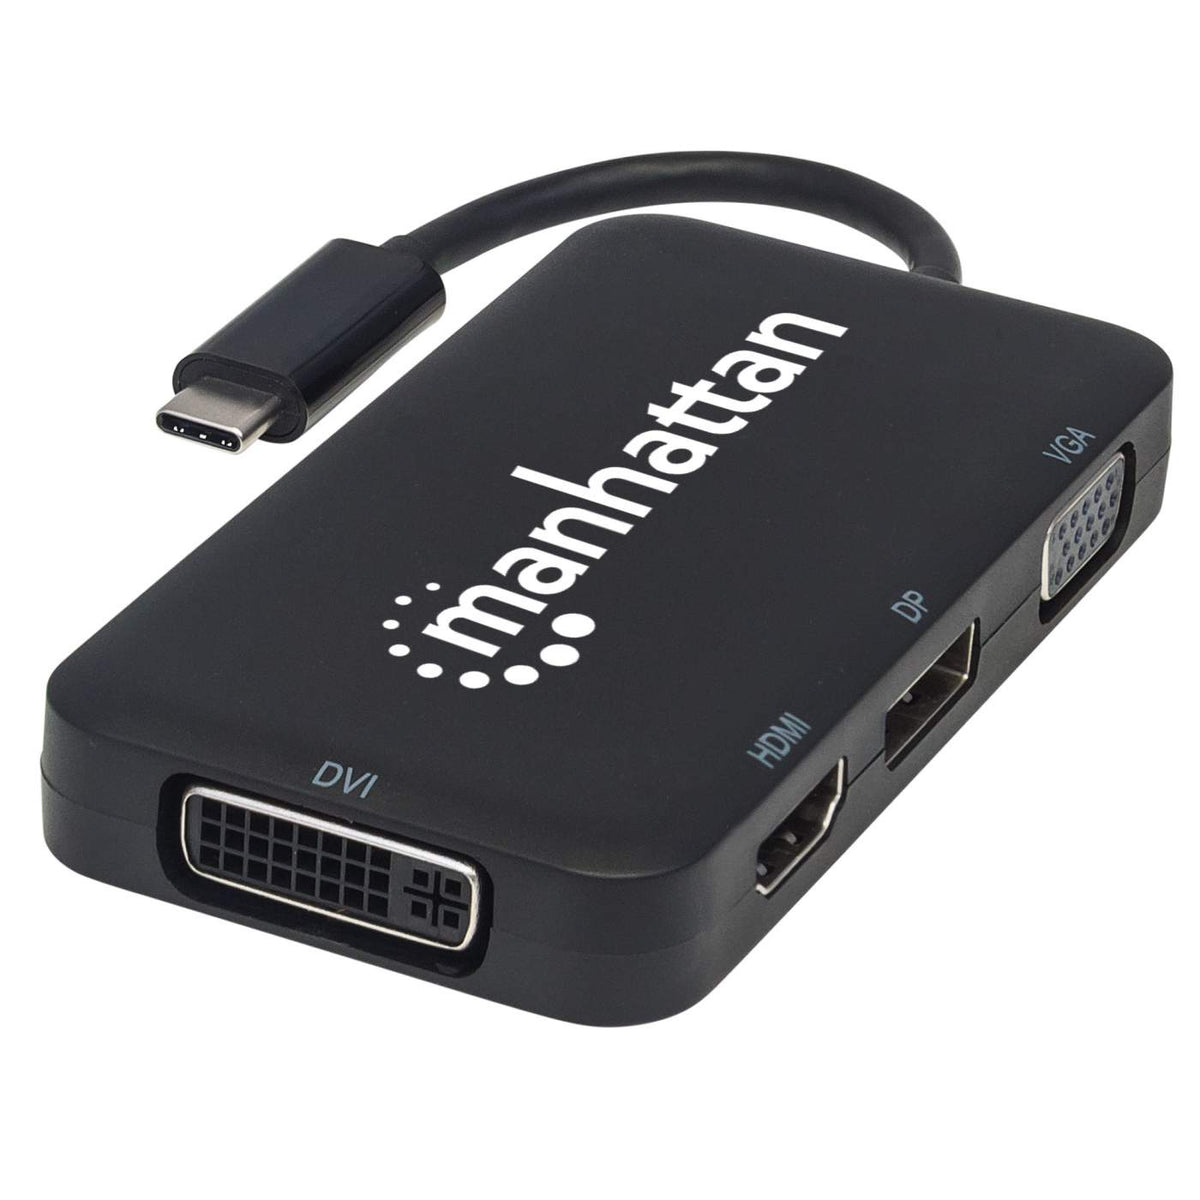 Convertidor Tipo C a HDMI 4K USB 3.0 Tipo C 3 en 1 Multiport